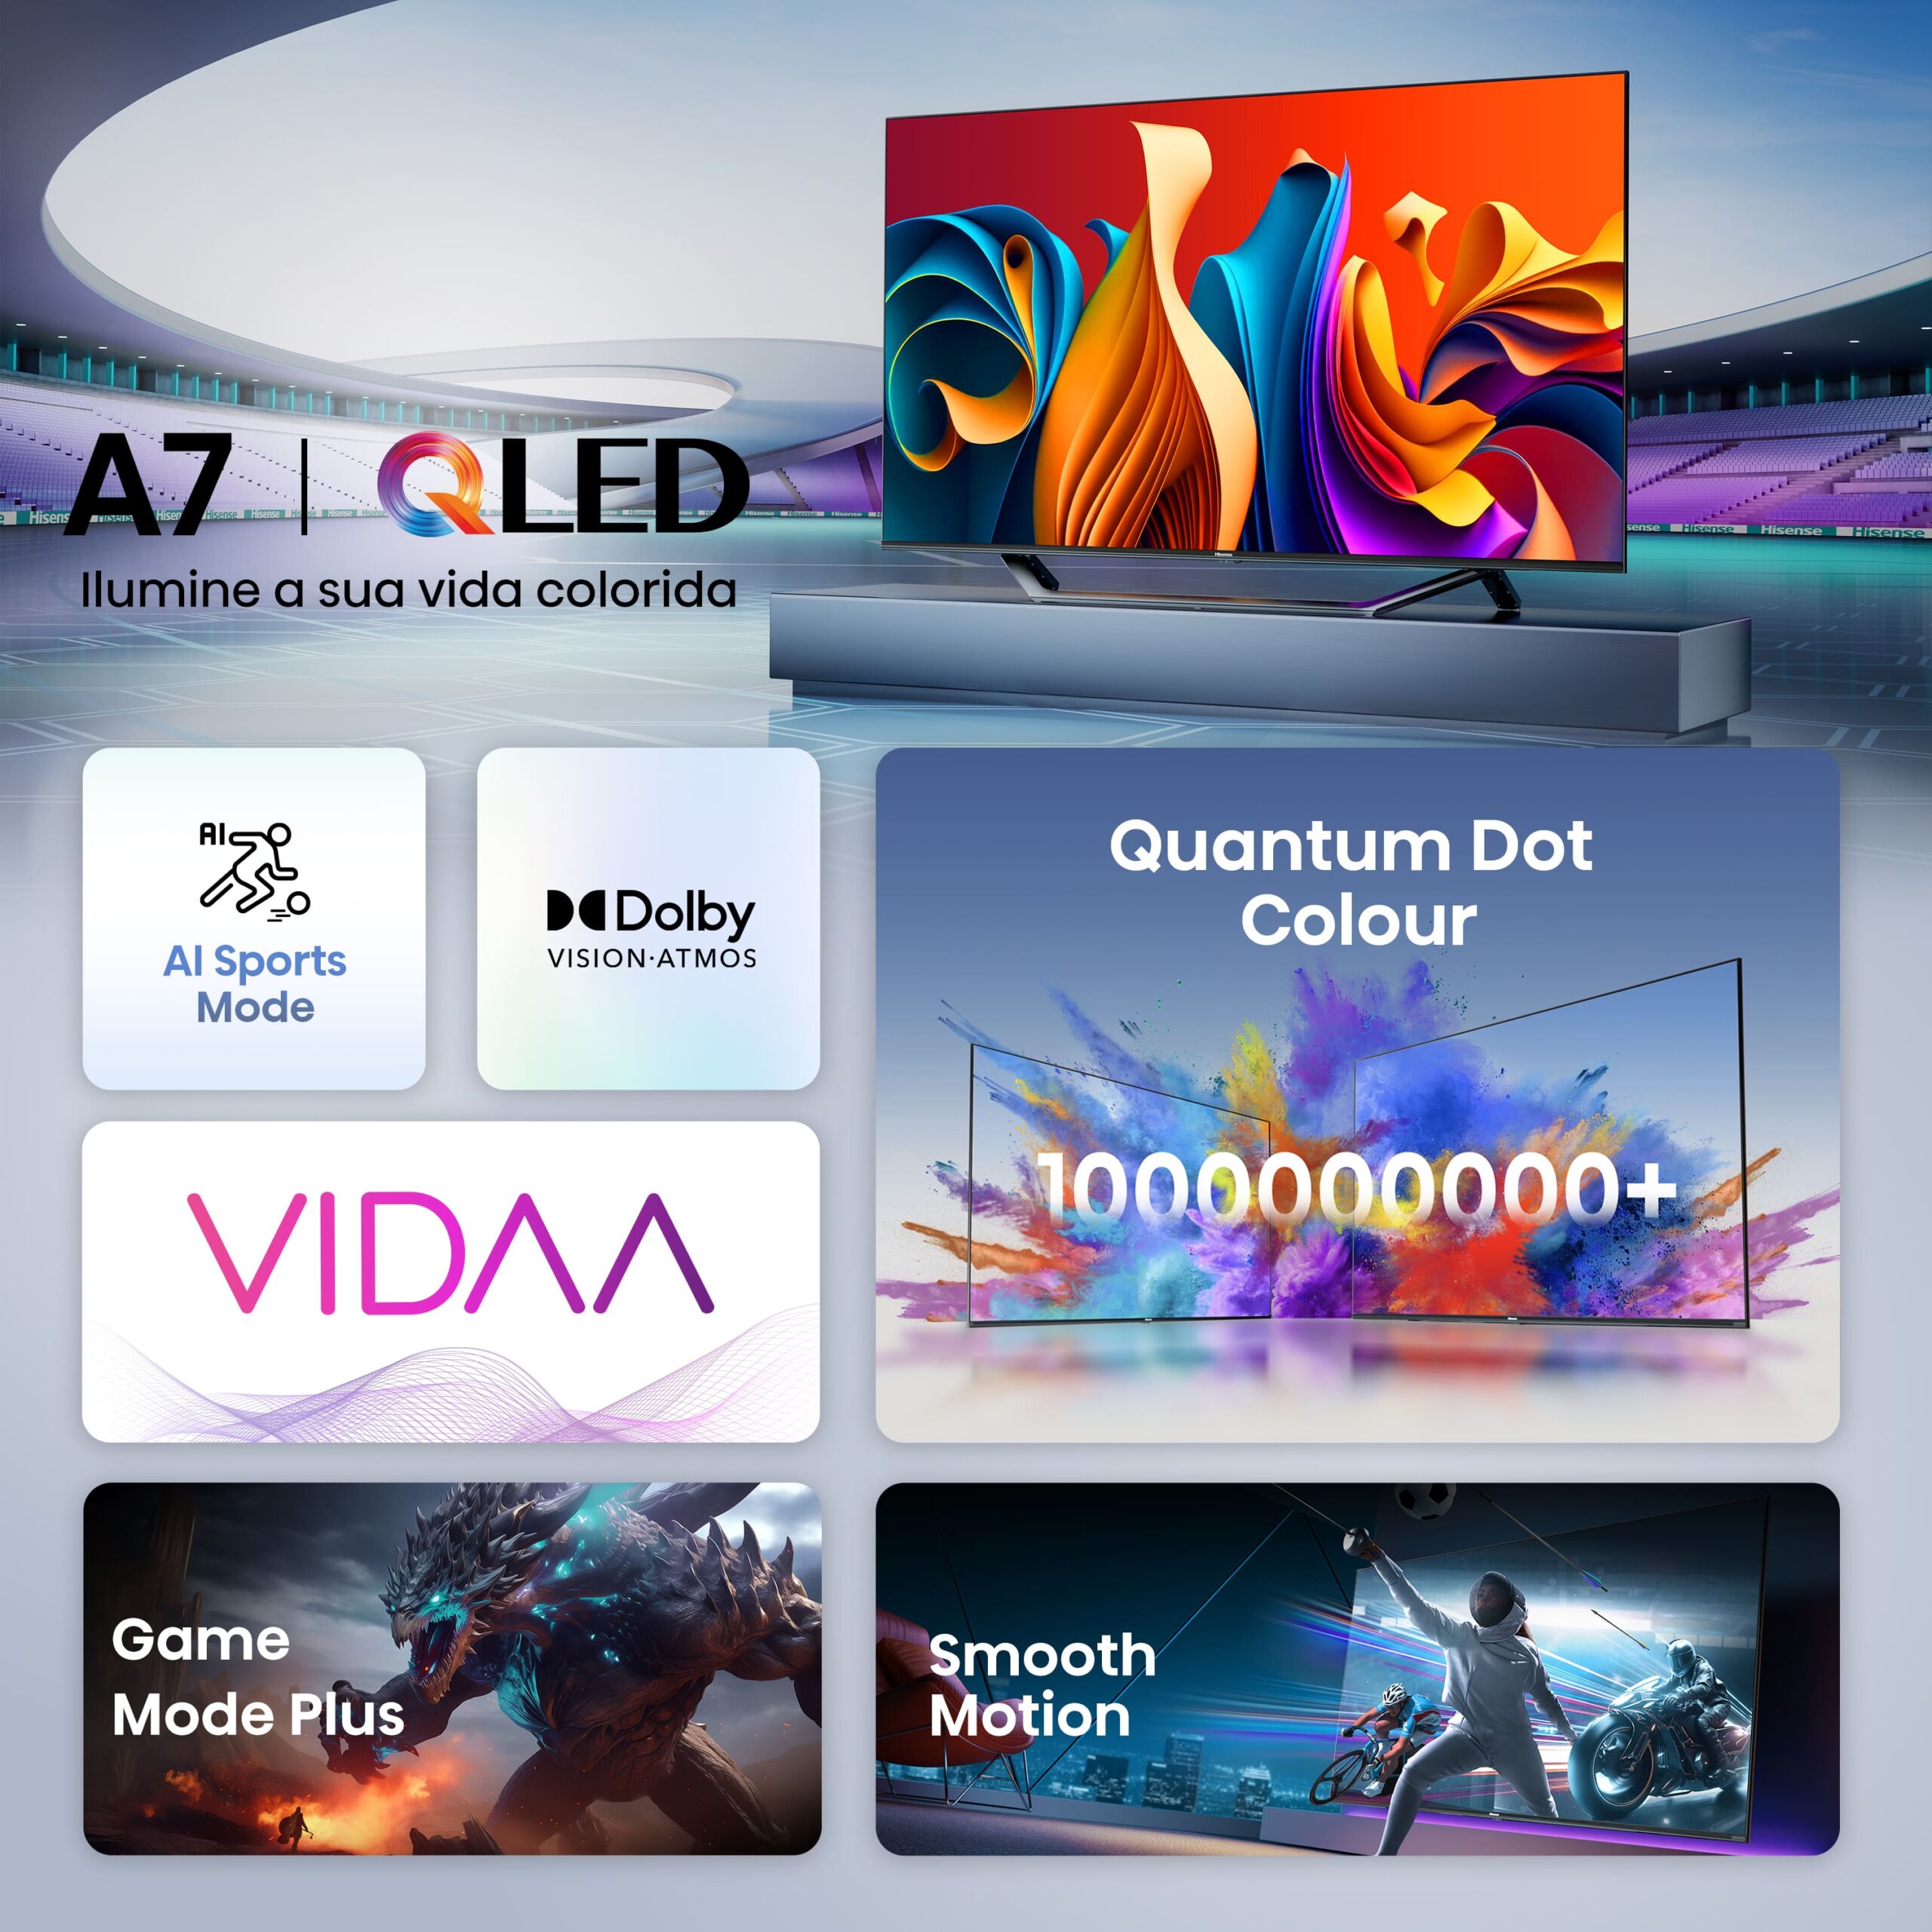 Hisense - QLED TV 65A7NQ Smart TV, Quantum Dot Colour, Dolby Vision & Atmos, Alexa Built in & VIDAA Voice